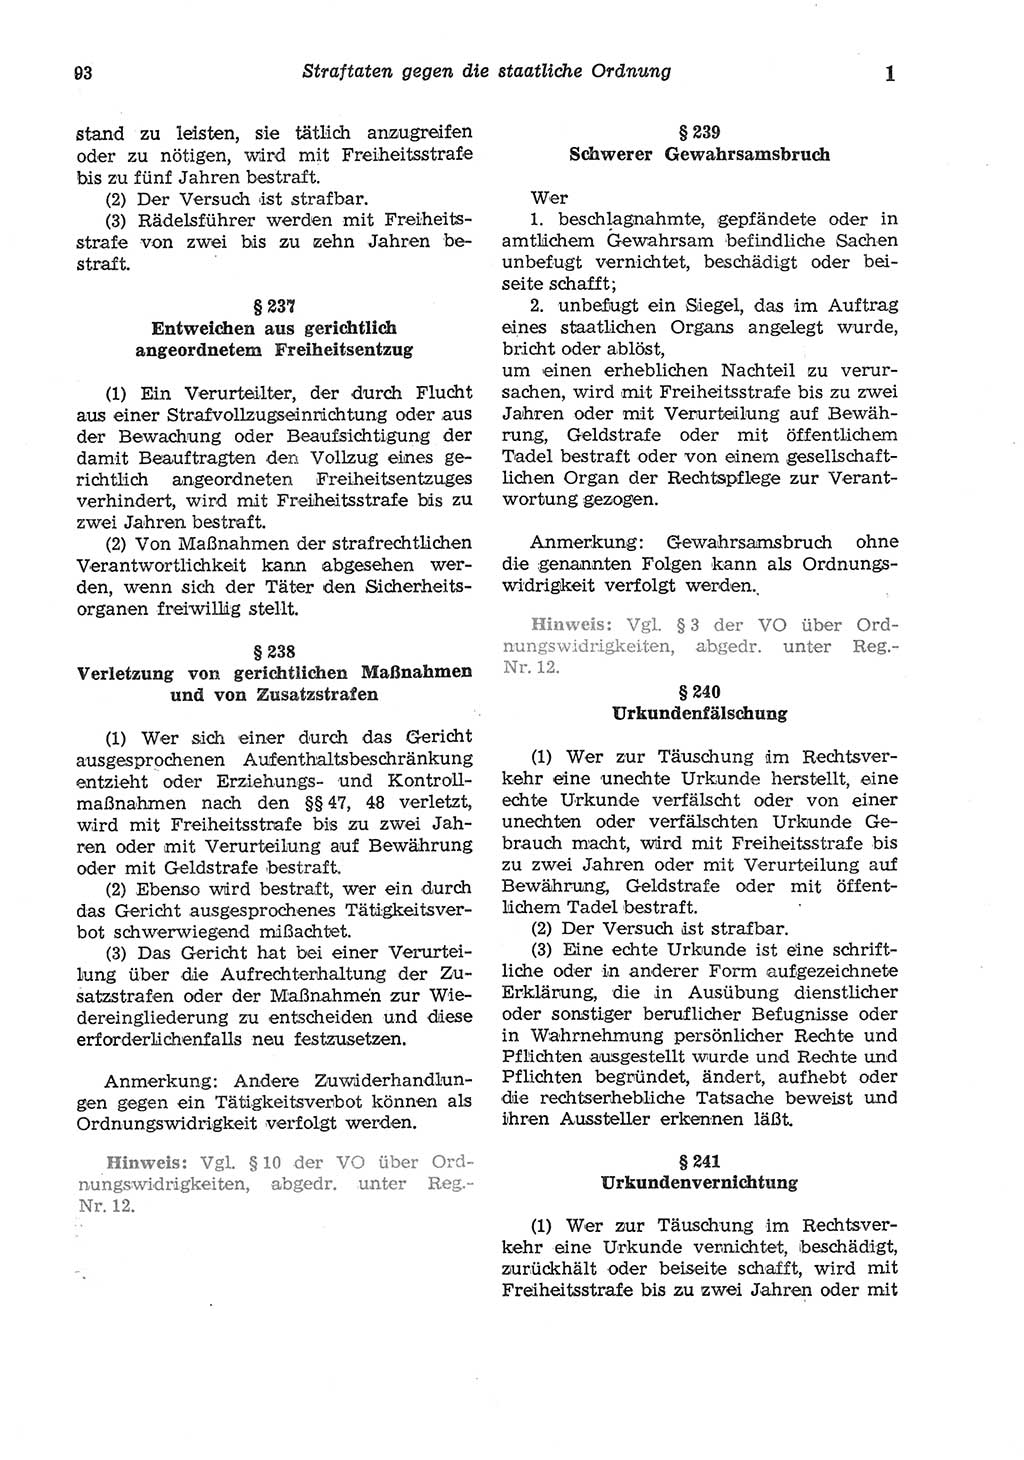 Strafgesetzbuch (StGB) der Deutschen Demokratischen Republik (DDR) und angrenzende Gesetze und Bestimmungen 1975, Seite 93 (StGB DDR Ges. Best. 1975, S. 93)